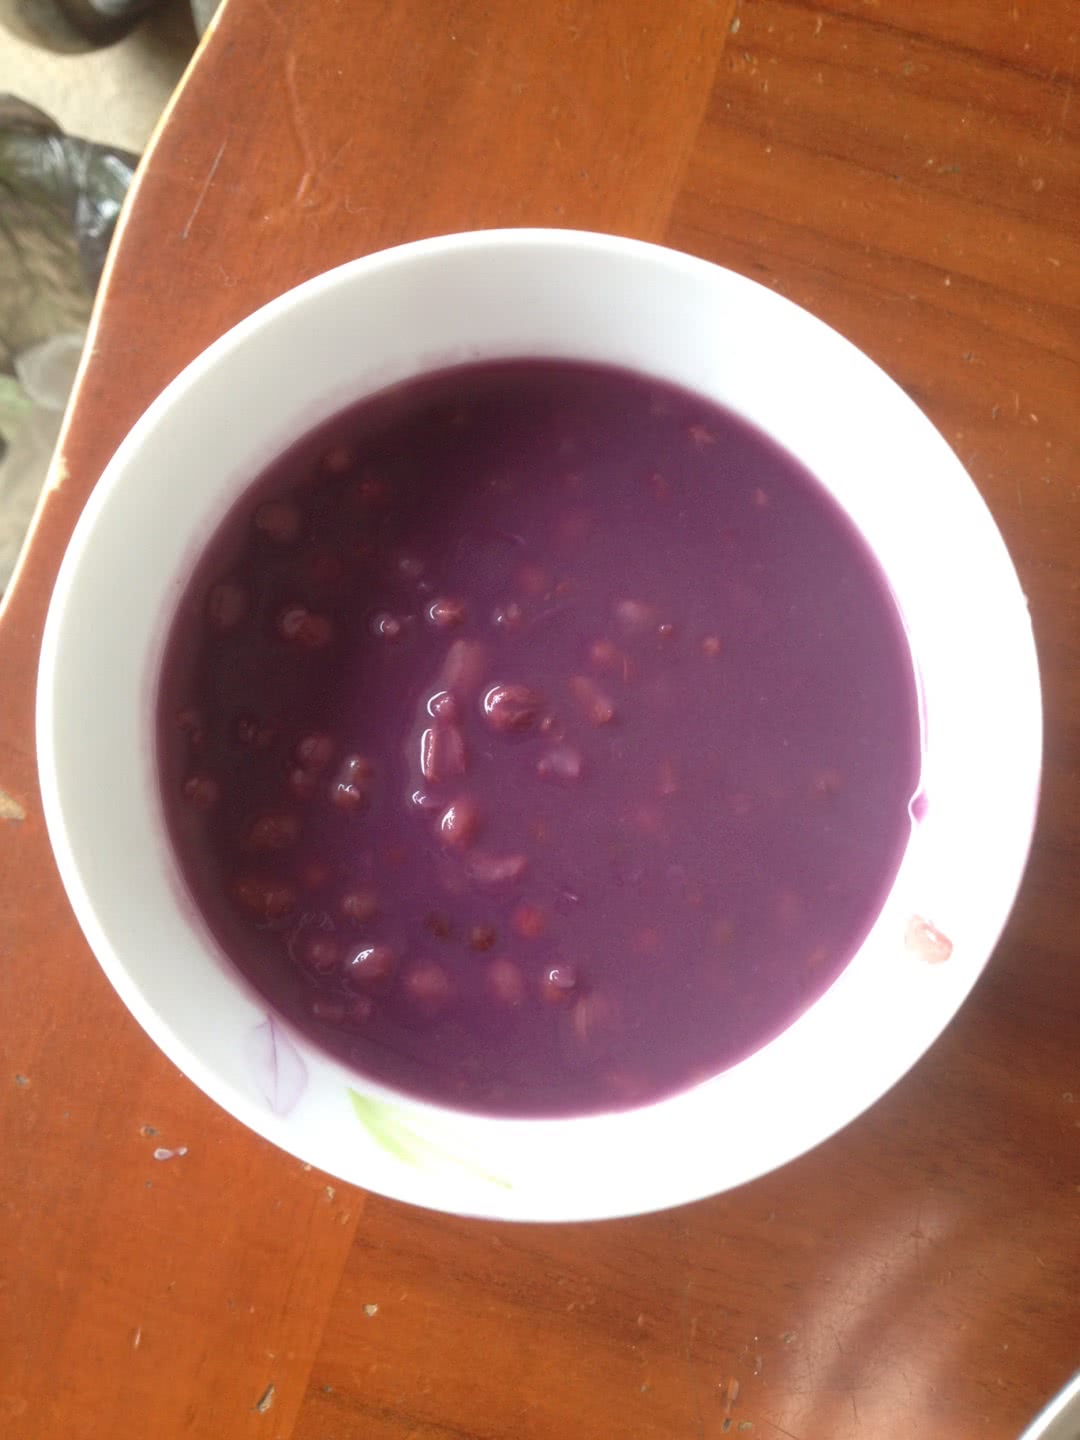 紫薯红豆粥